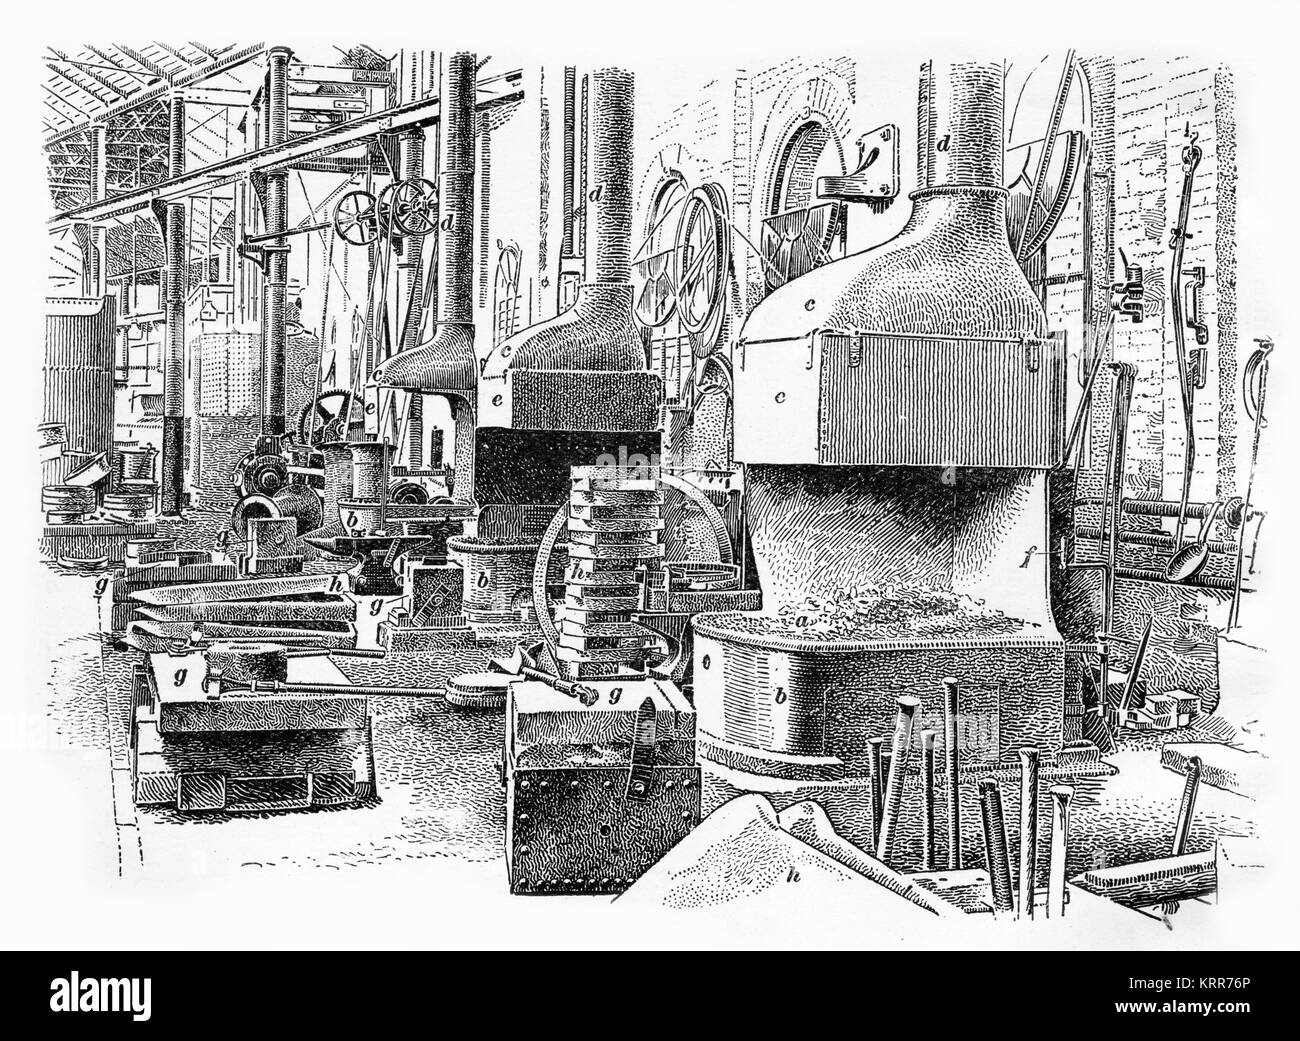 Incisione di un fabbro del negozio verso la fine della rivoluzione industriale in Inghilterra. Da una incisione fatta nel 1890s. Foto Stock